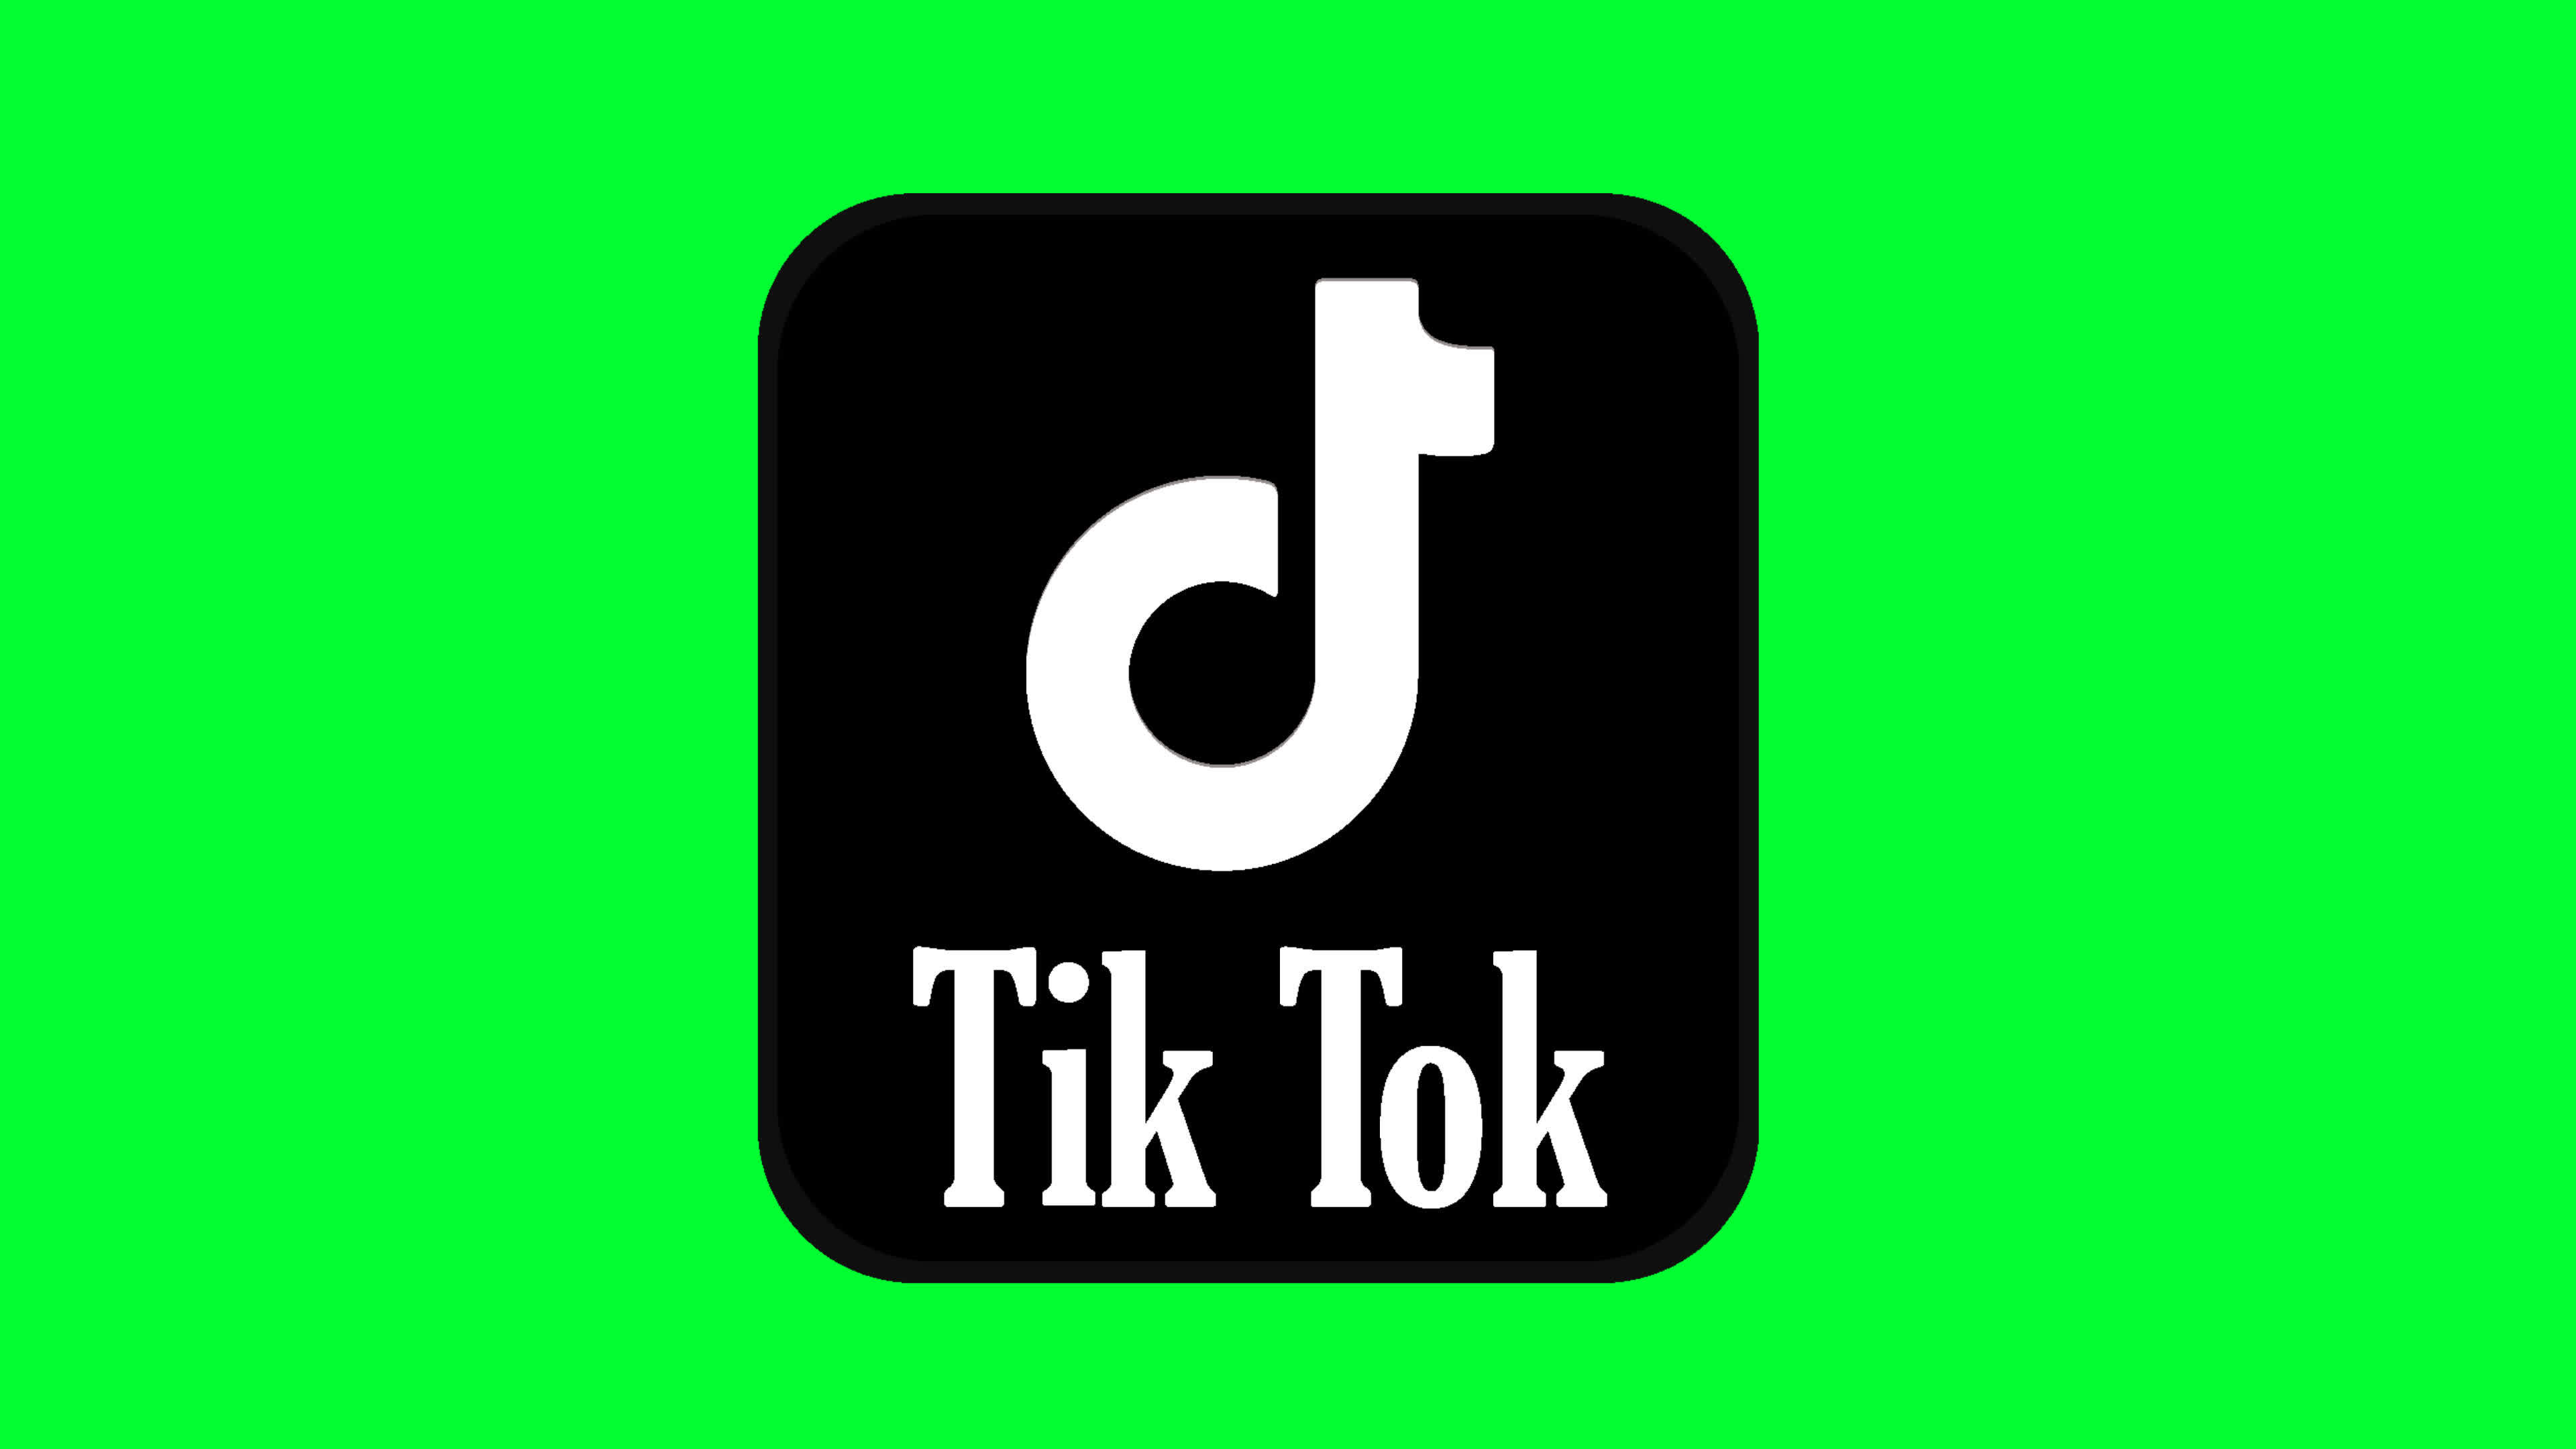 Logo TikTok chính là biểu tượng được rất nhiều người yêu thích và nhớ đến. Hãy xem qua động logo TikTok này để đắm chìm trong trò chơi ánh sáng, màu sắc và âm thanh tuyệt vời của ứng dụng nổi tiếng này.